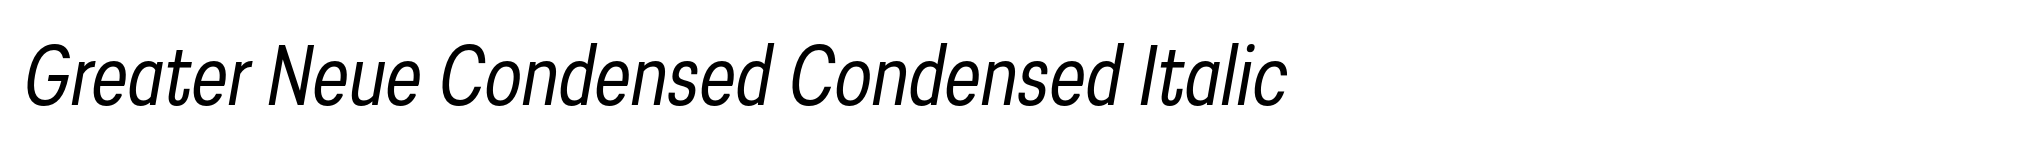 Greater Neue Condensed Condensed Italic image